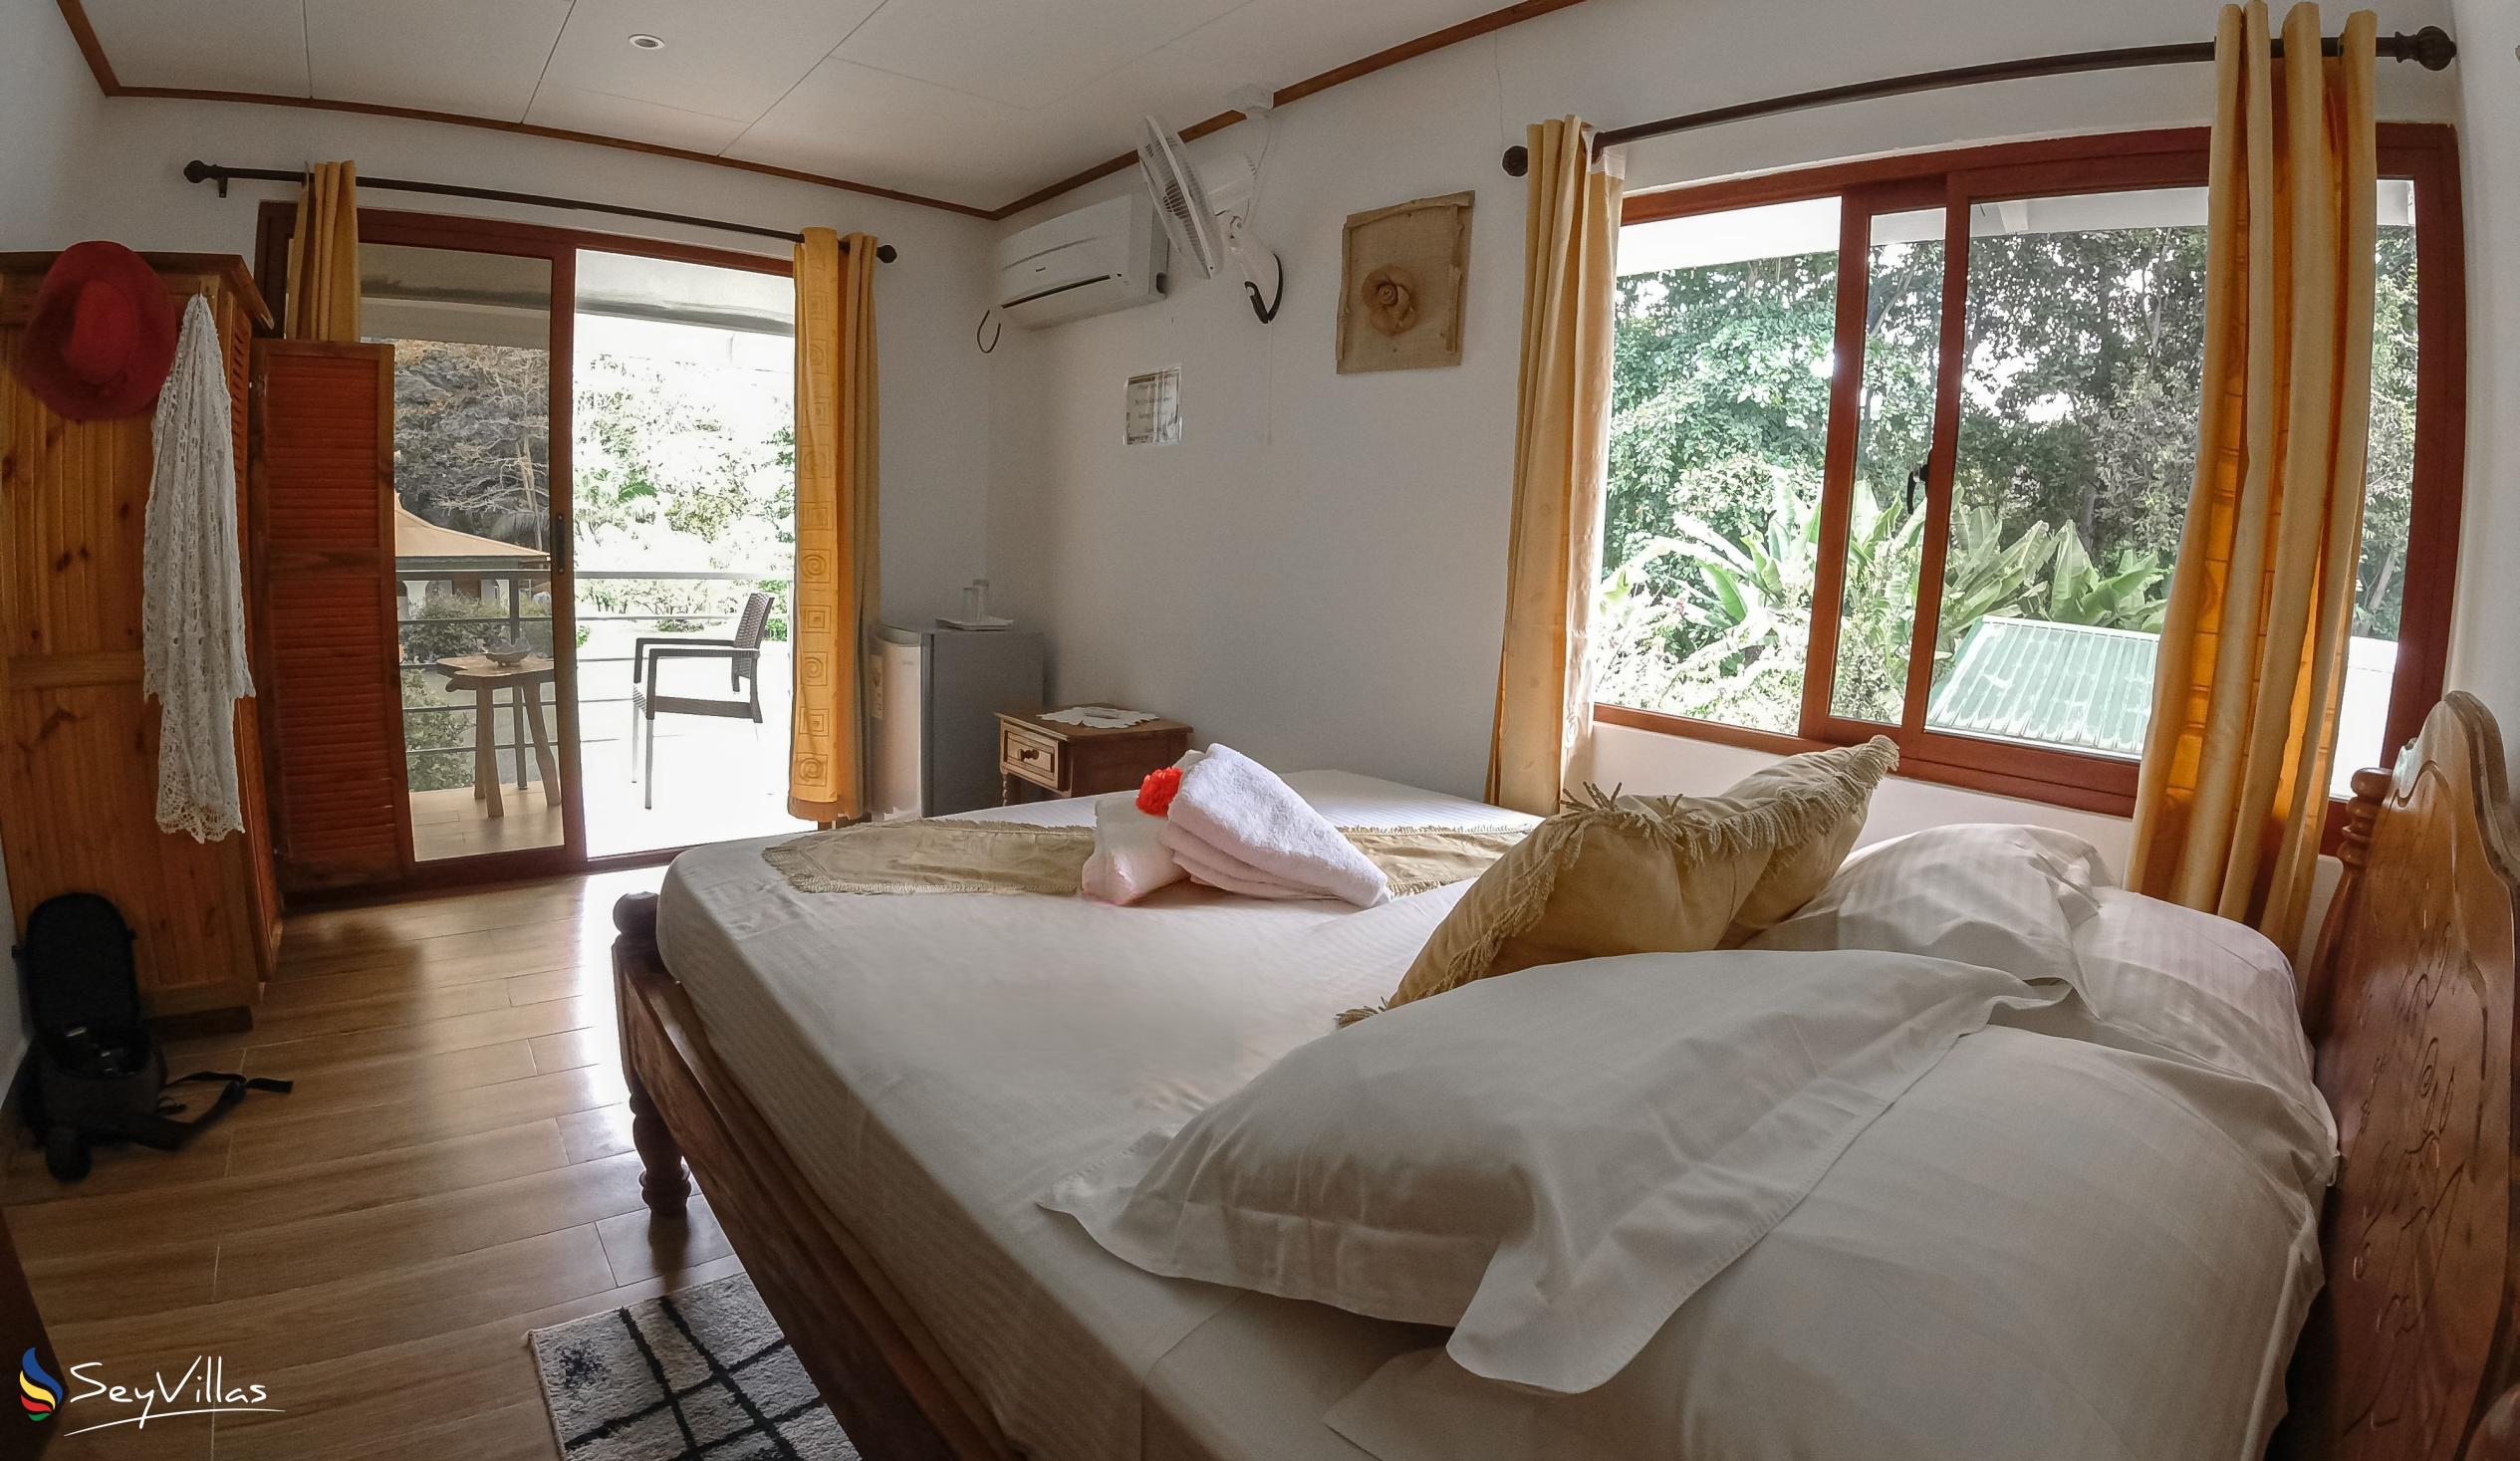 Photo 65: Tannette's Villa - Deluxe Double Room - La Digue (Seychelles)